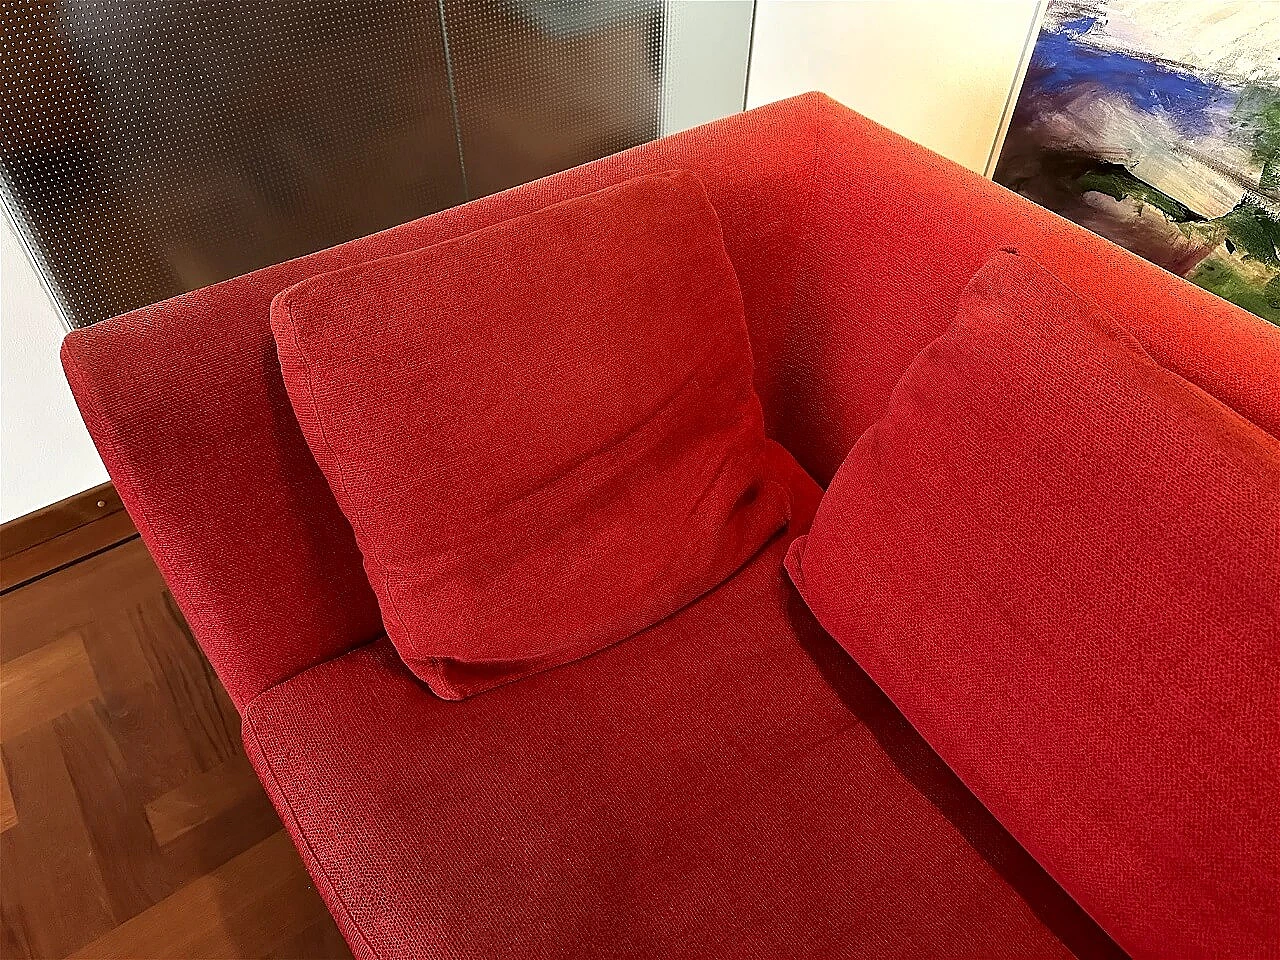 CH228 Charles sofa in red Maxalto-Cat cotton by Antonio Citterio for B&B Italia 21